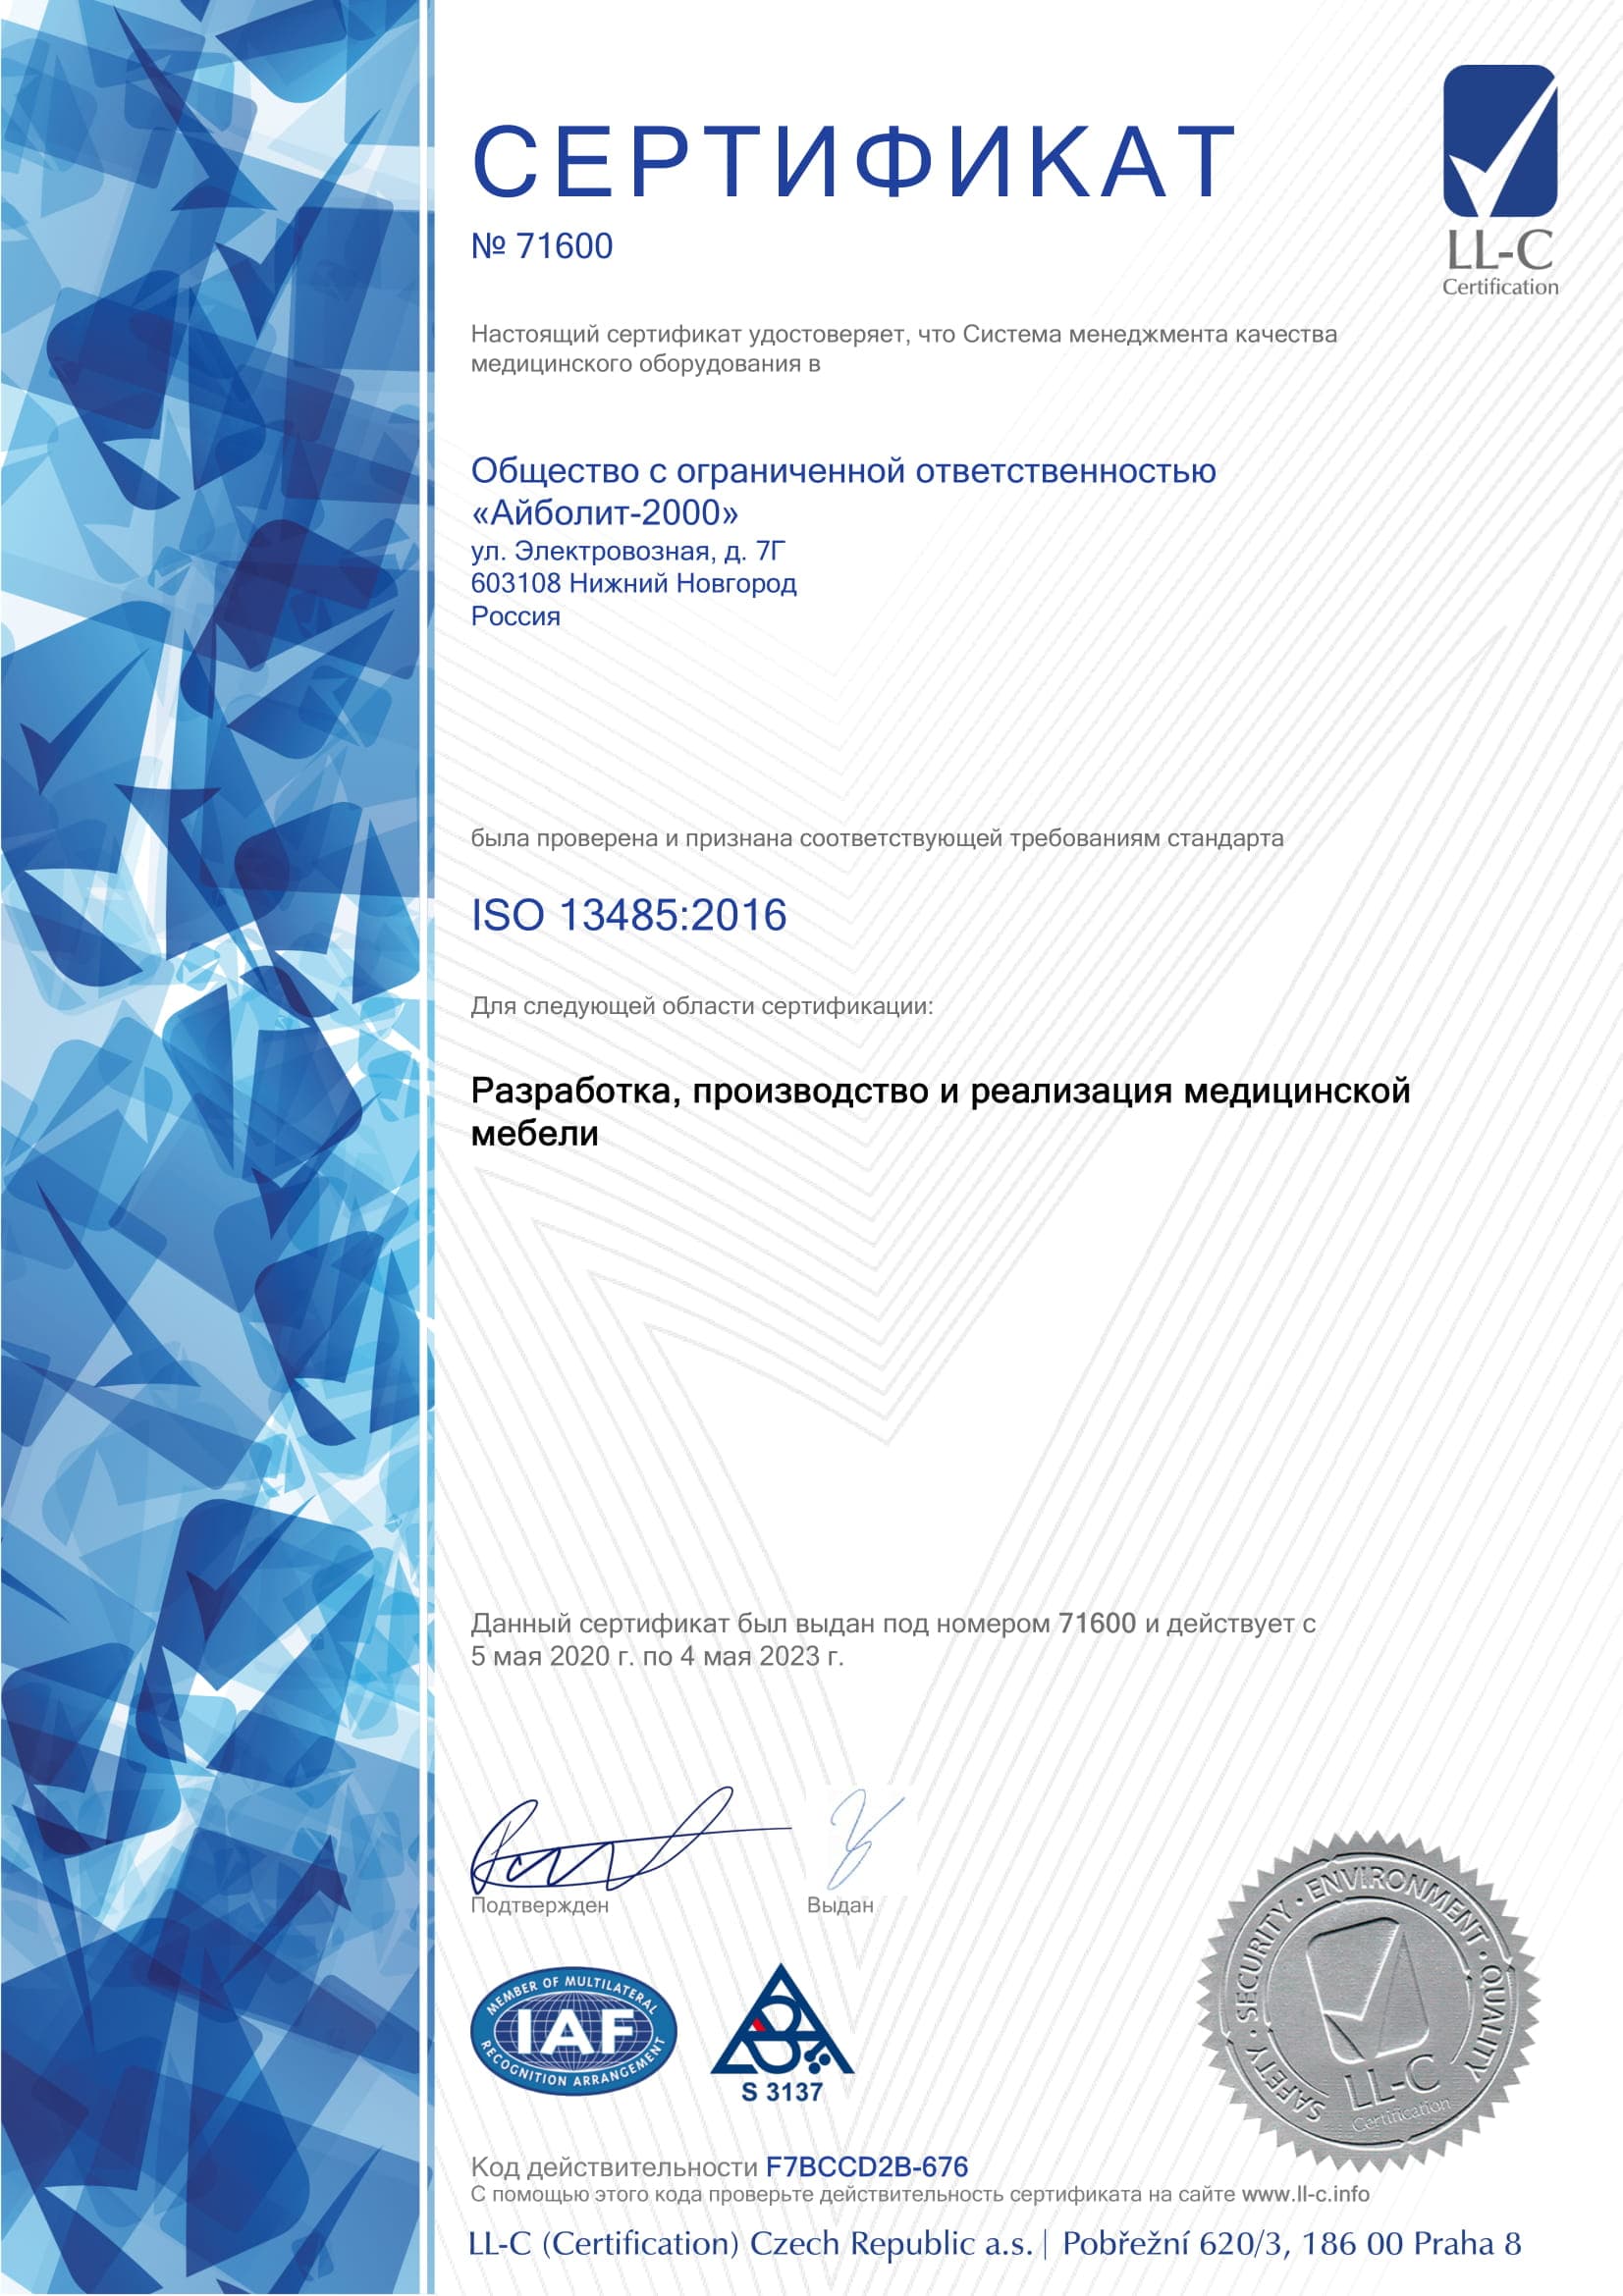 ООО «Aybolit-2000» получил сертификат ISO 13485 :2016